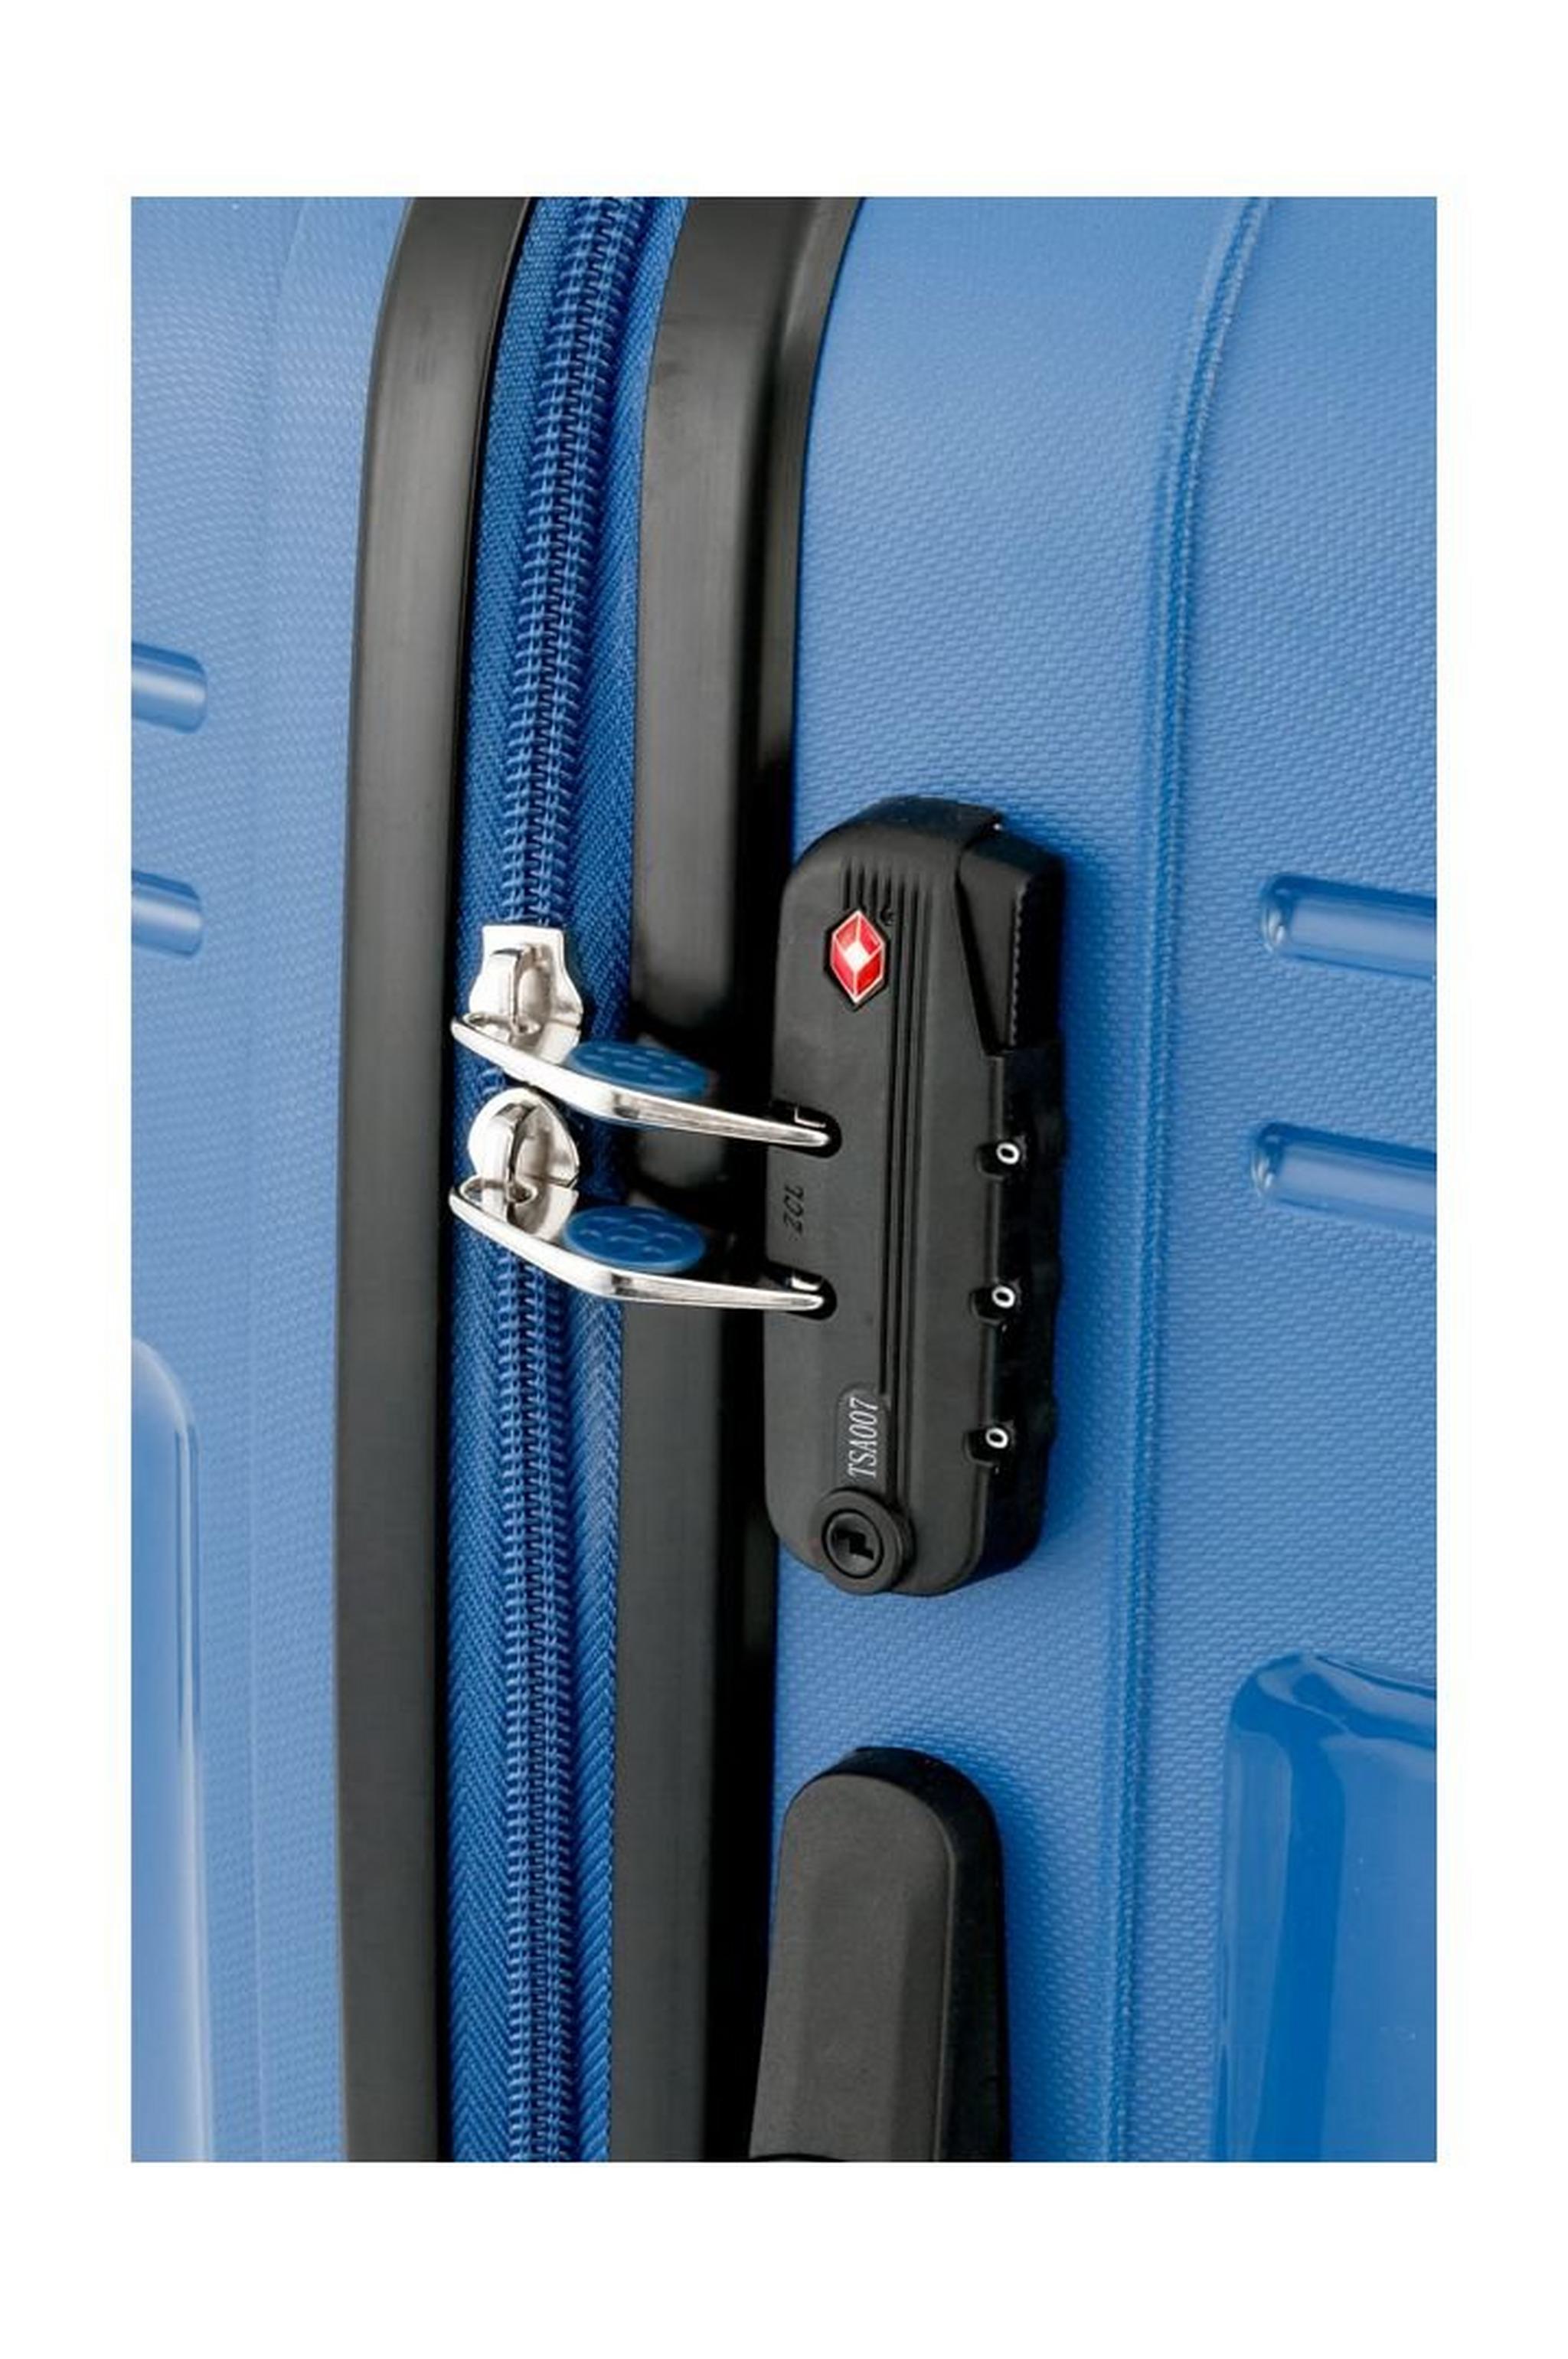 Kamiliant Mapuna Spinner Luggage 55 CM (AM6X71001) - Regatta Blue